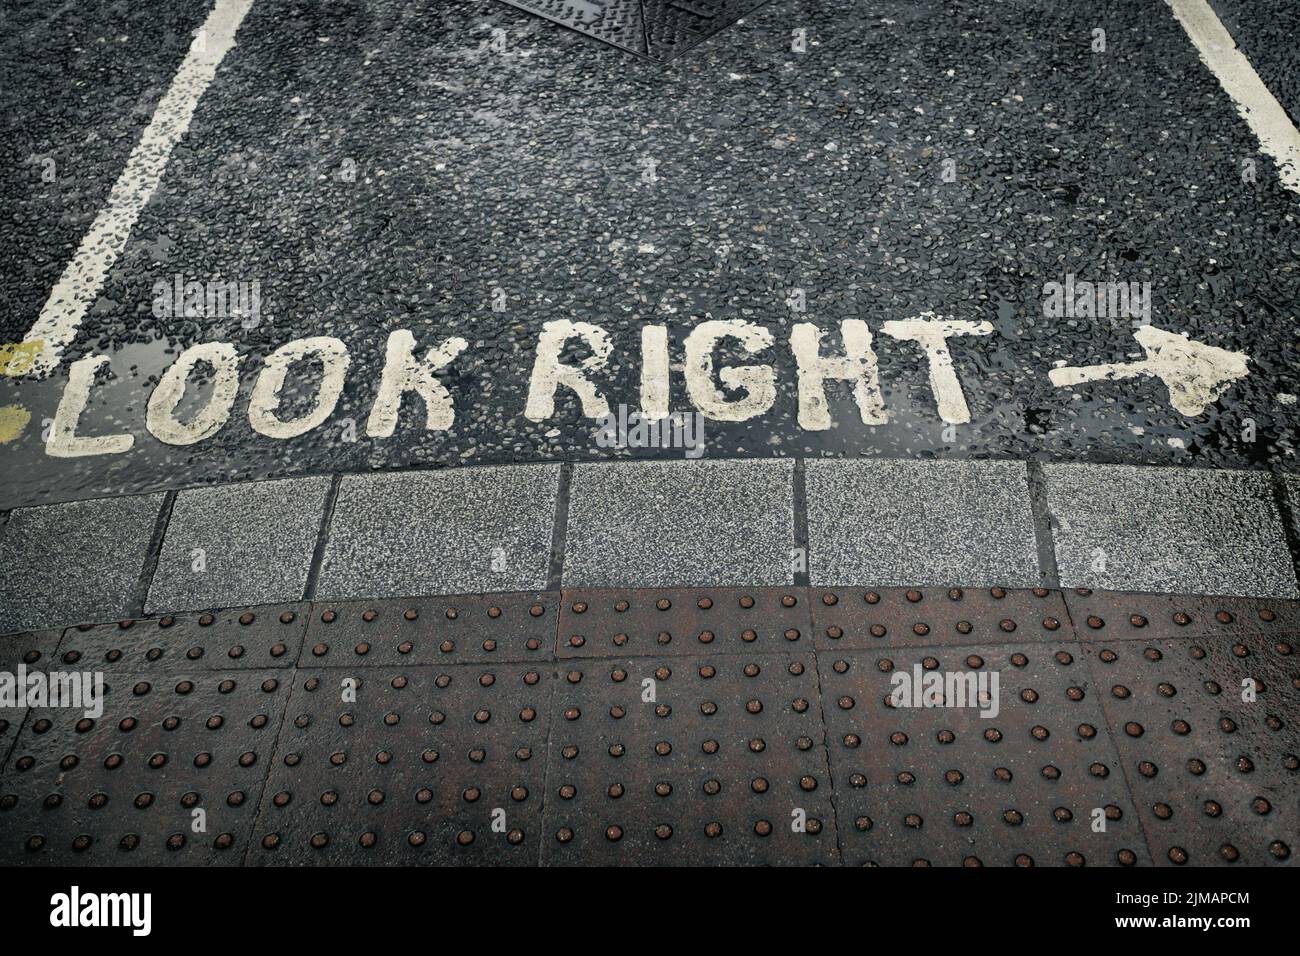 Dublin - LOOK RIGHT at the crosswalk, Ireland Stock Photo